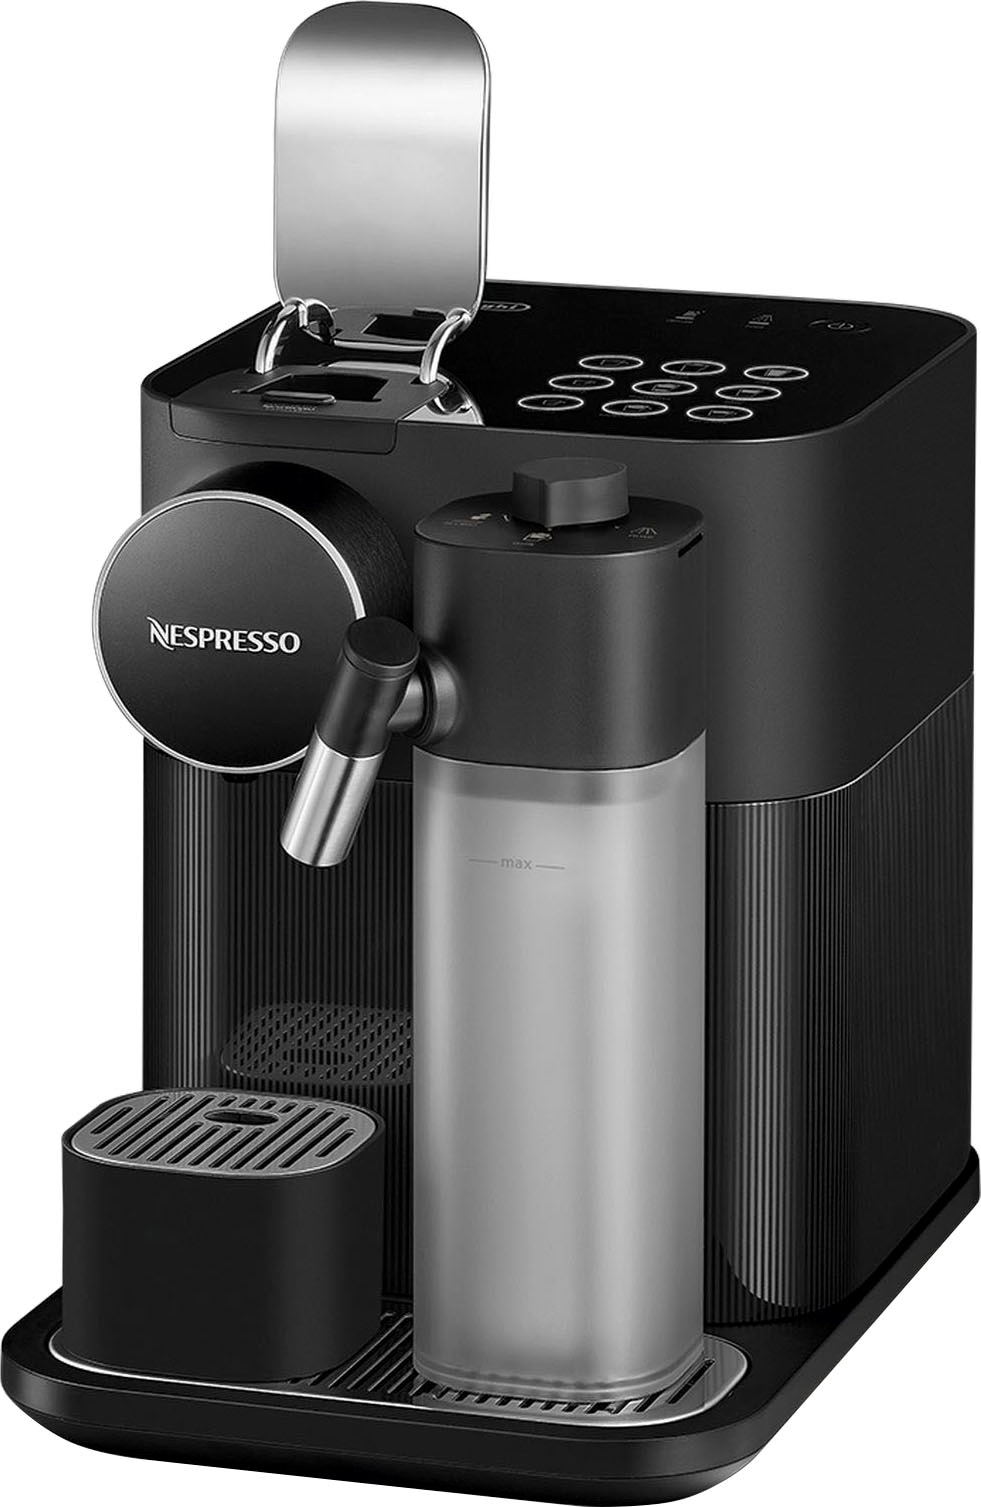 Nespresso Kapselmaschine »EN640.B von DeLonghi, schwarz«, inkl. Willkommenspaket mit 7 Kapseln